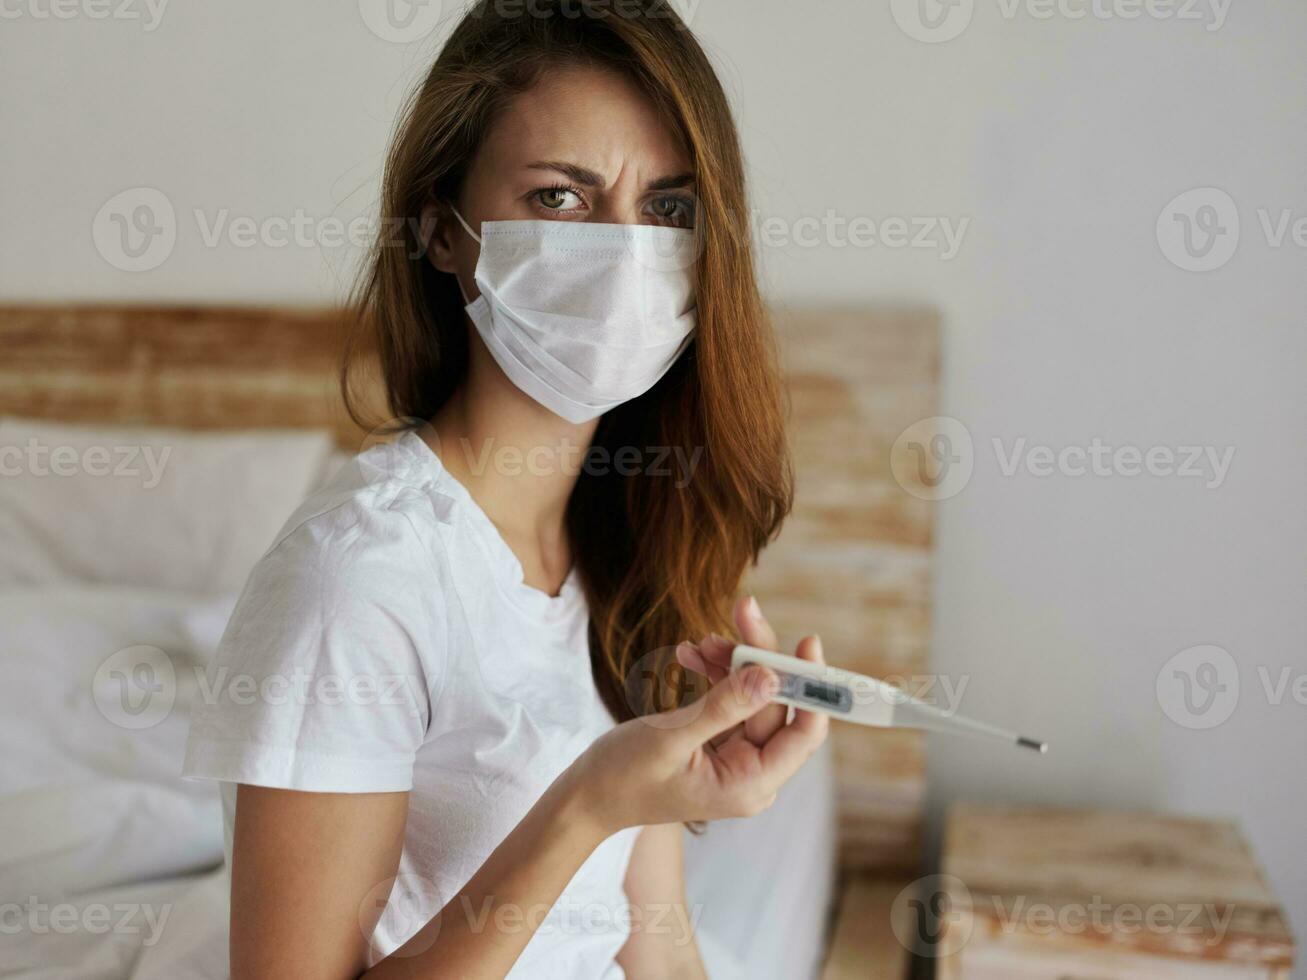 mulher vestindo médico mascarar termômetro saúde Verifica insatisfeito facial expressão foto